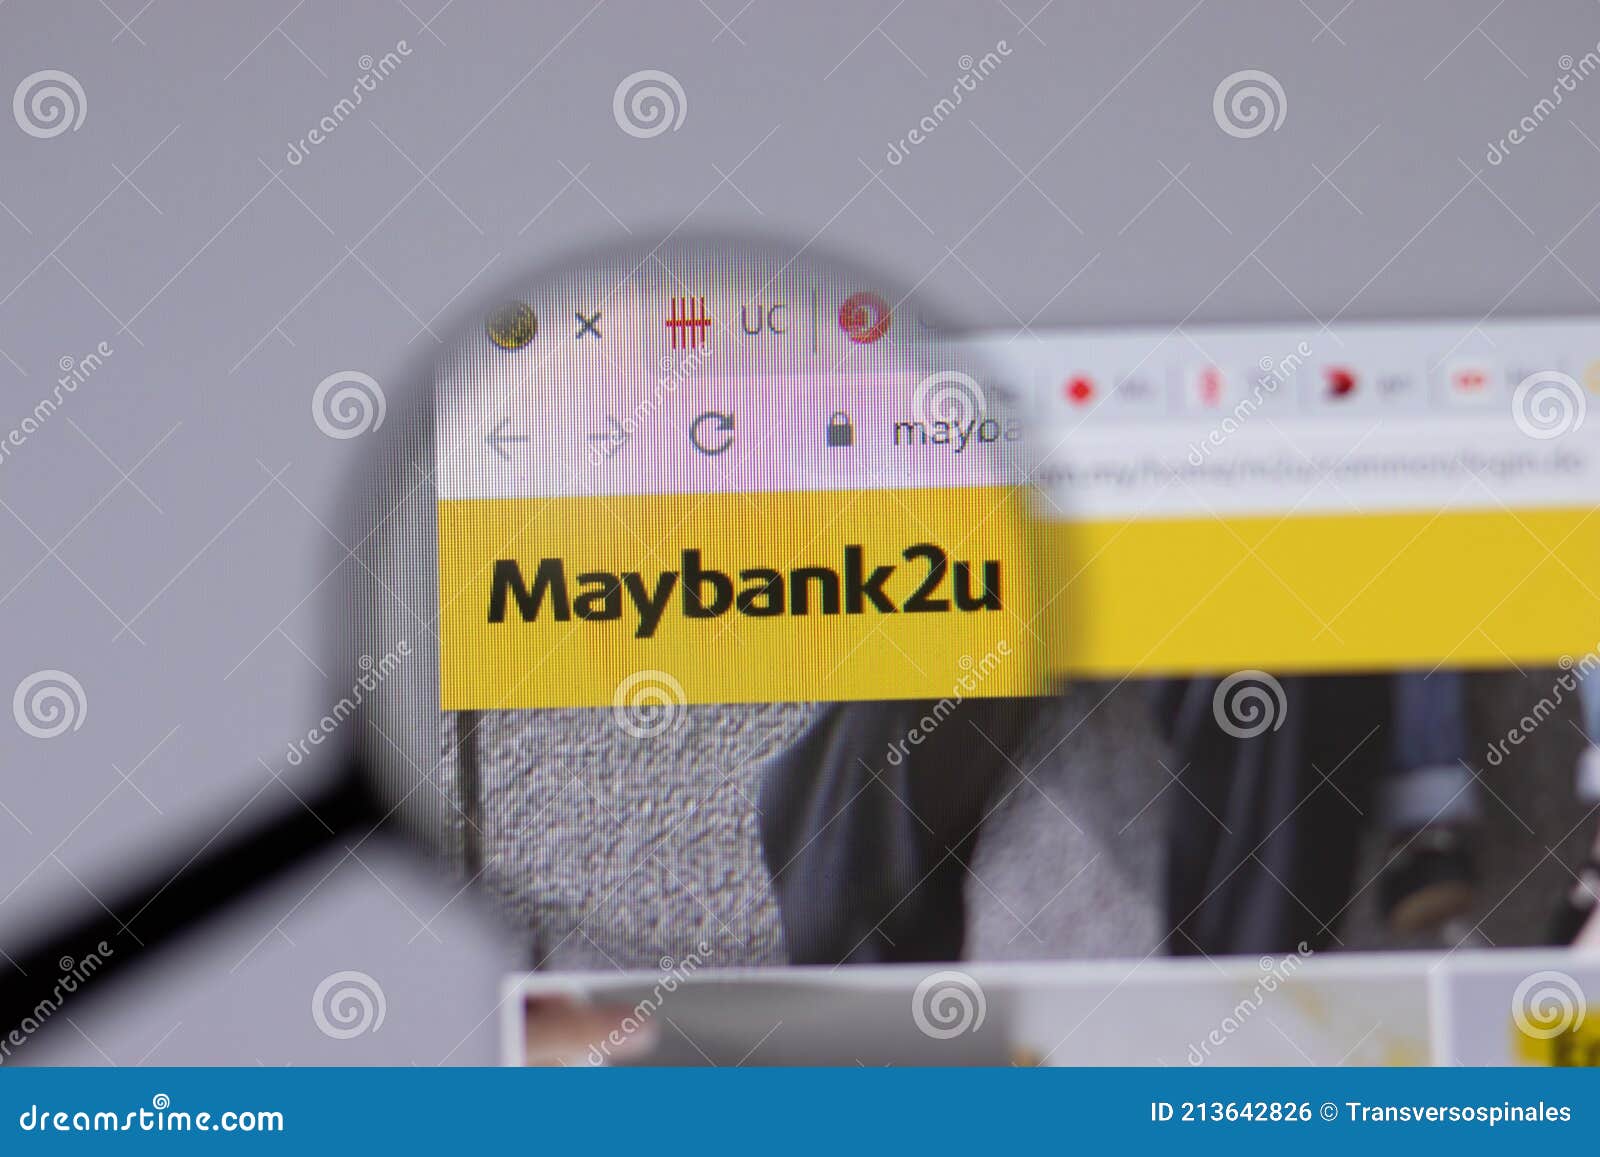 Website maybank2u Maybank Online